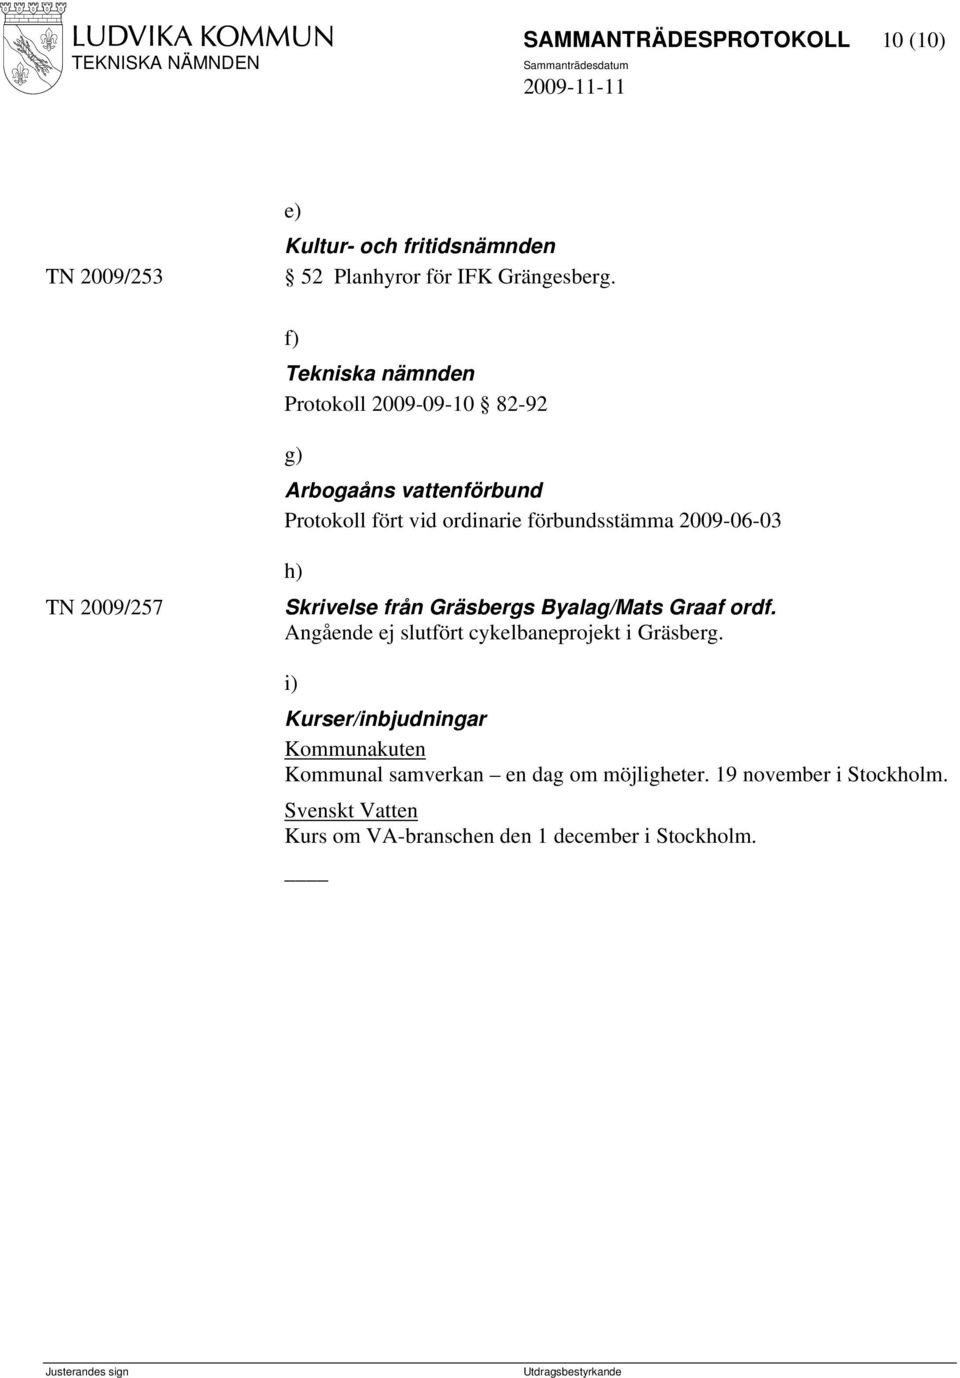 TN 2009/257 h) Skrivelse från Gräsbergs Byalag/Mats Graaf ordf. Angående ej slutfört cykelbaneprojekt i Gräsberg.